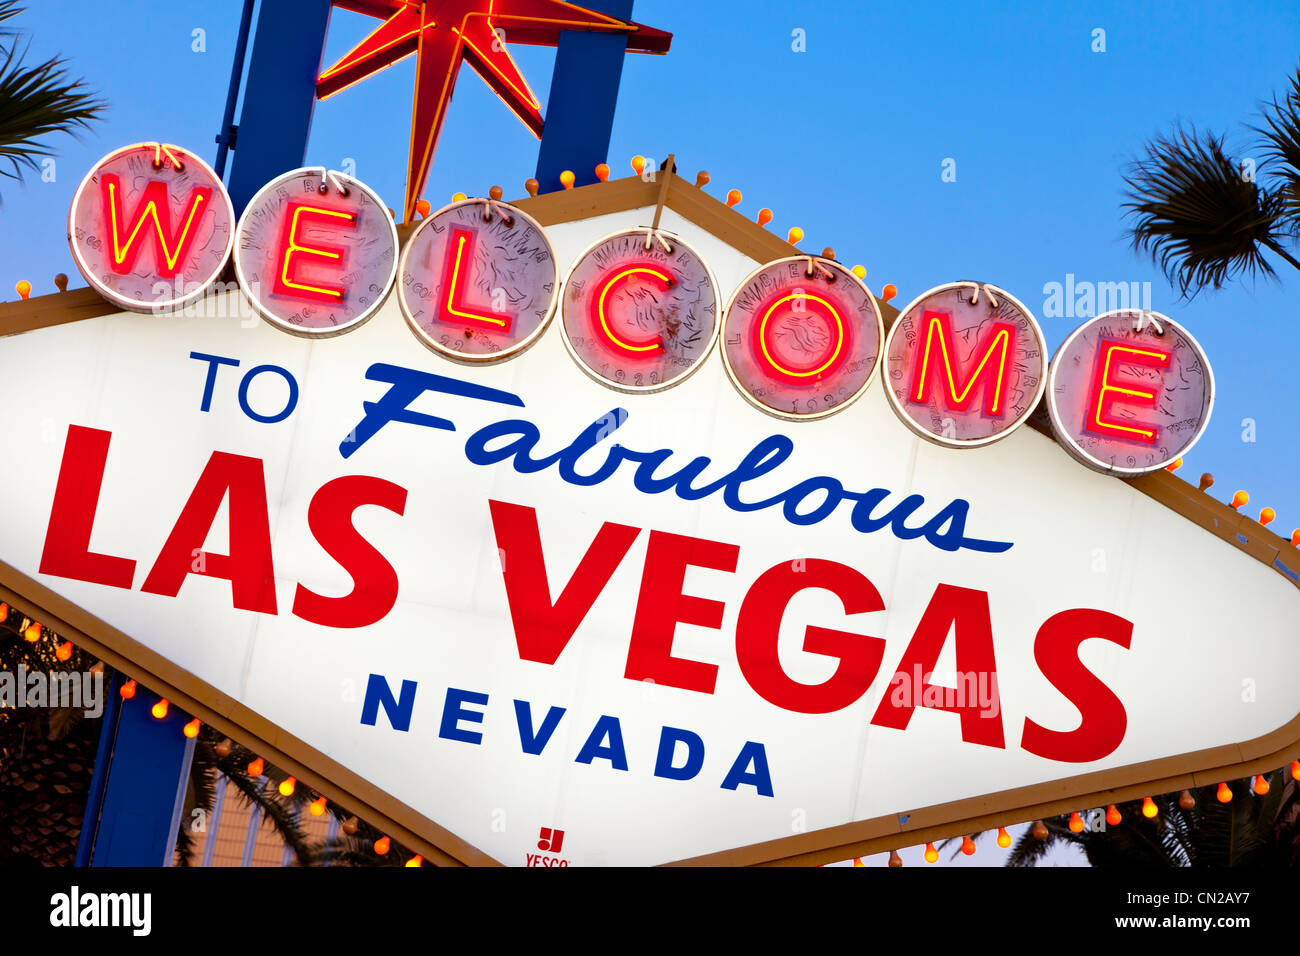 Célèbre 'Welcome to Fabulous Las Vegas", Las Vegas, Nevada, USA Banque D'Images